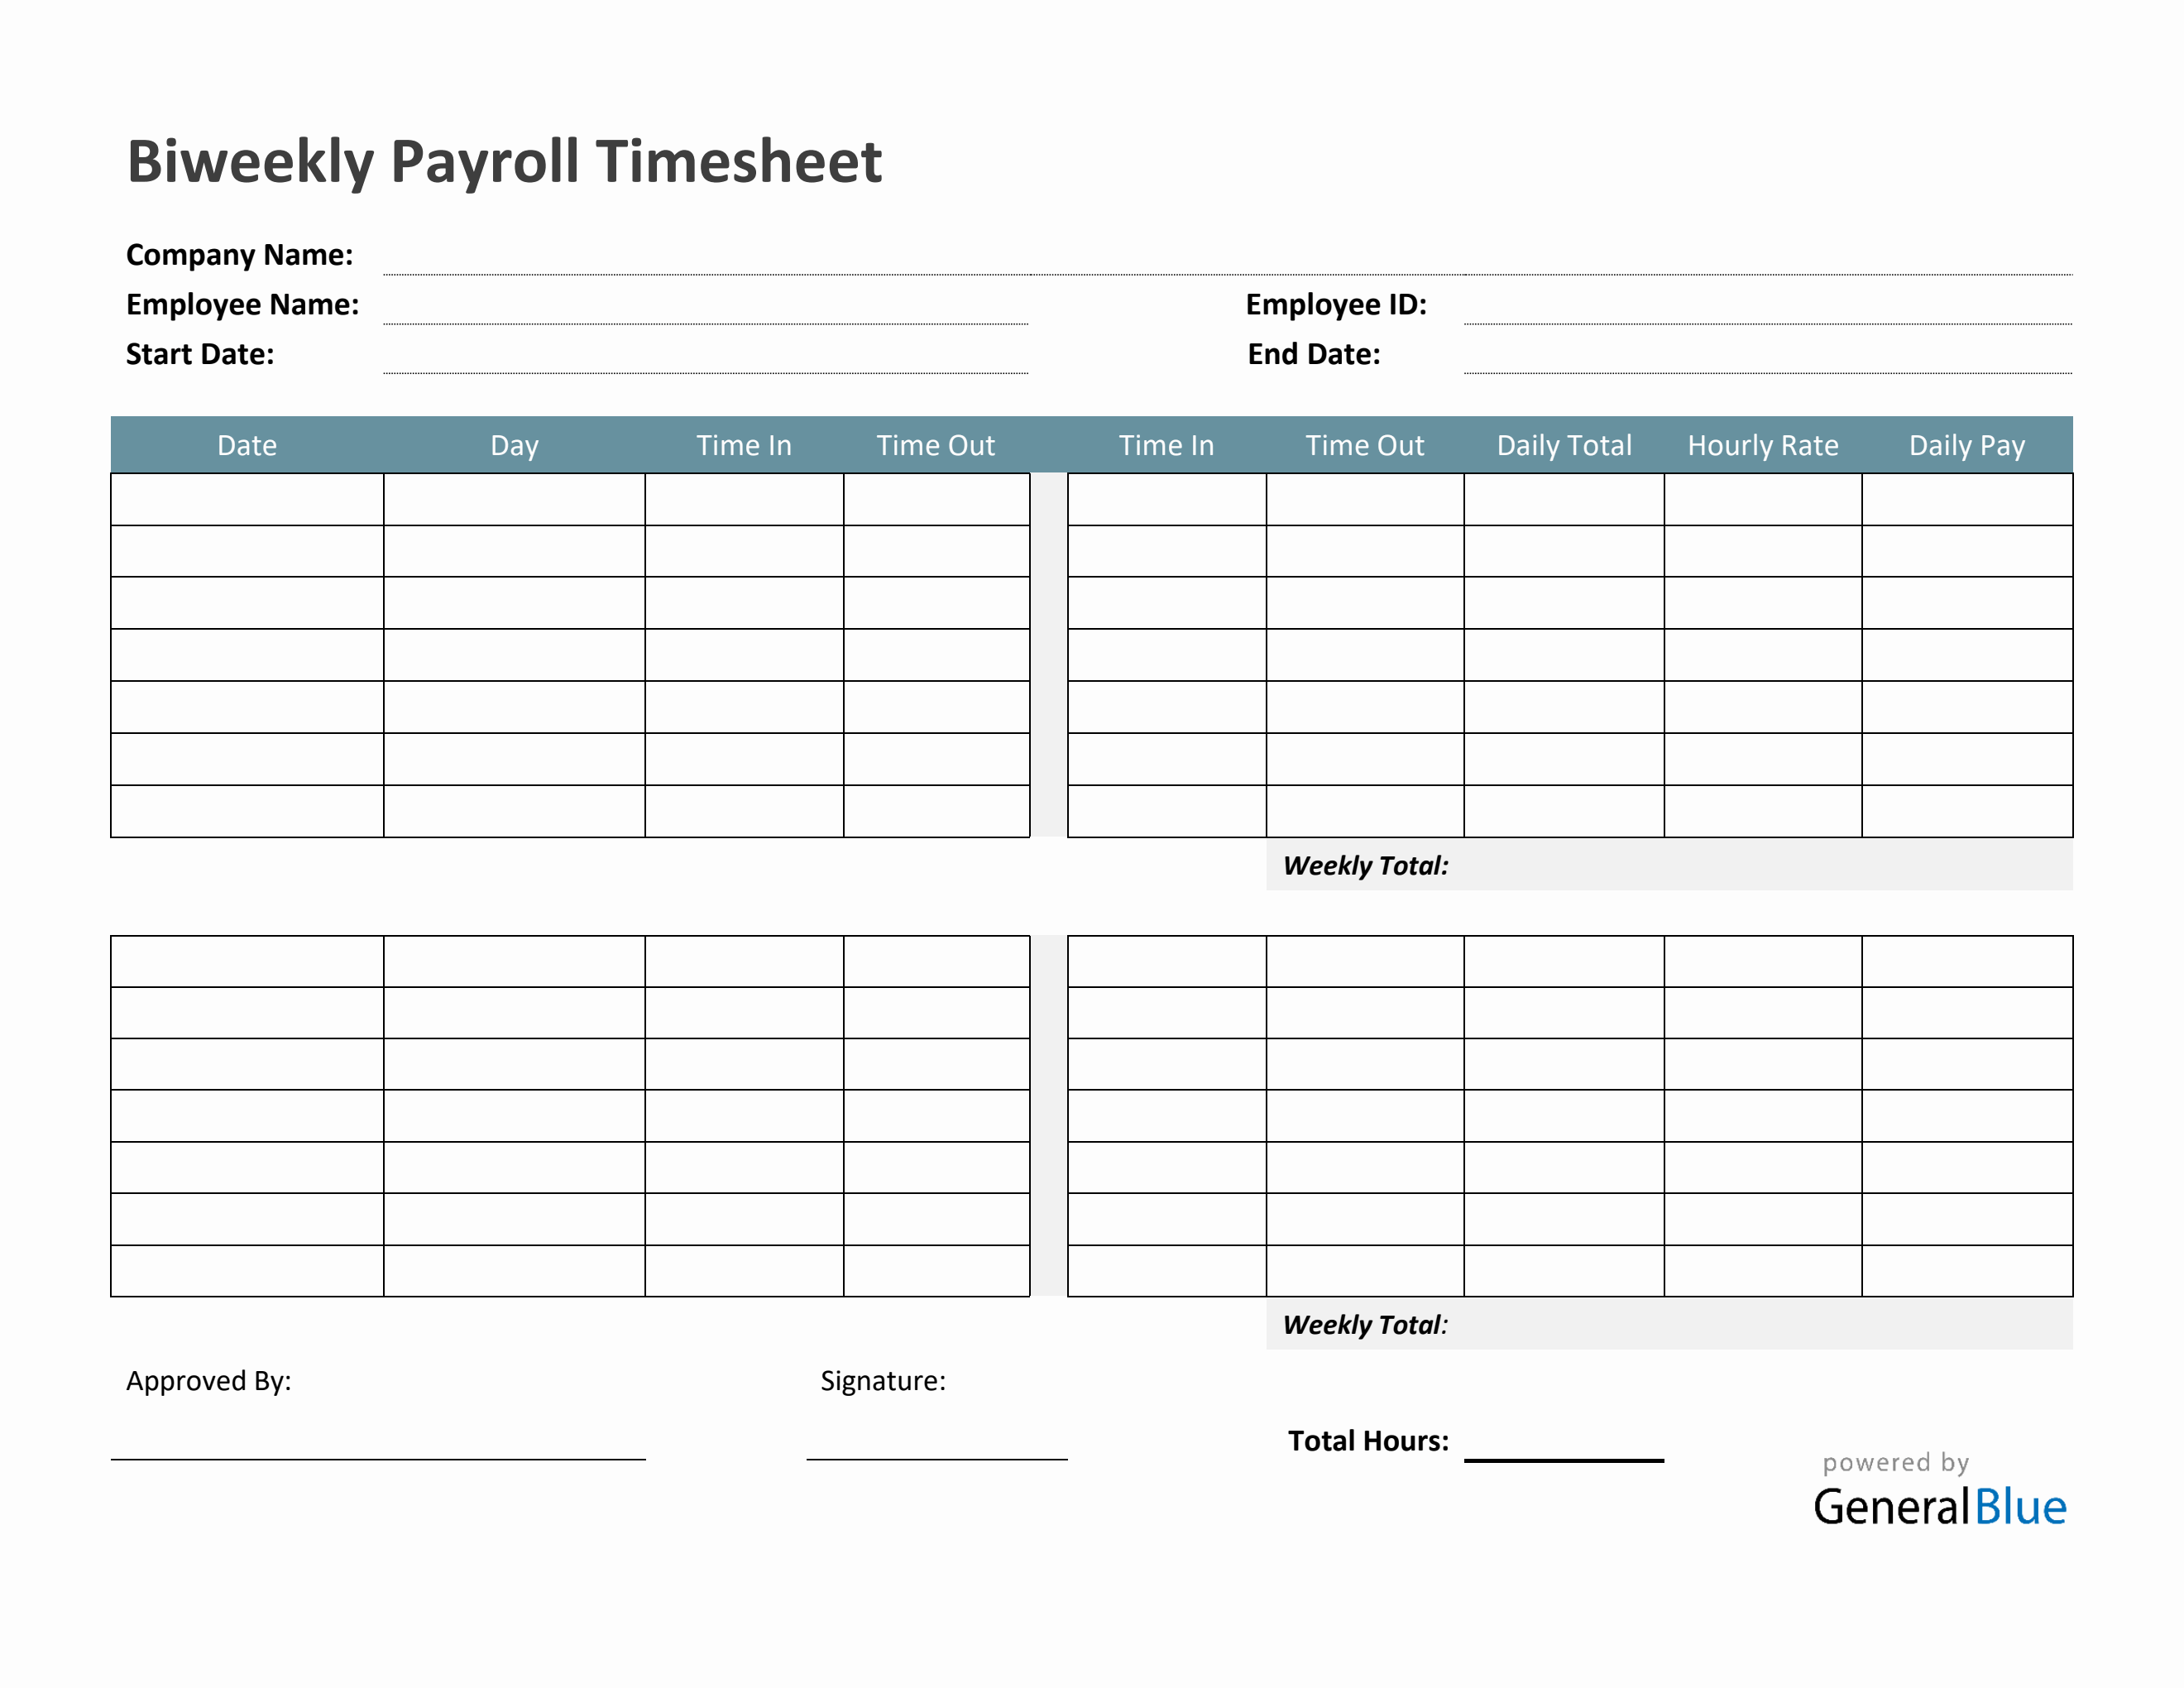 biweekly-timesheet-templates-biweekly-payroll-timesheet-in-pdf